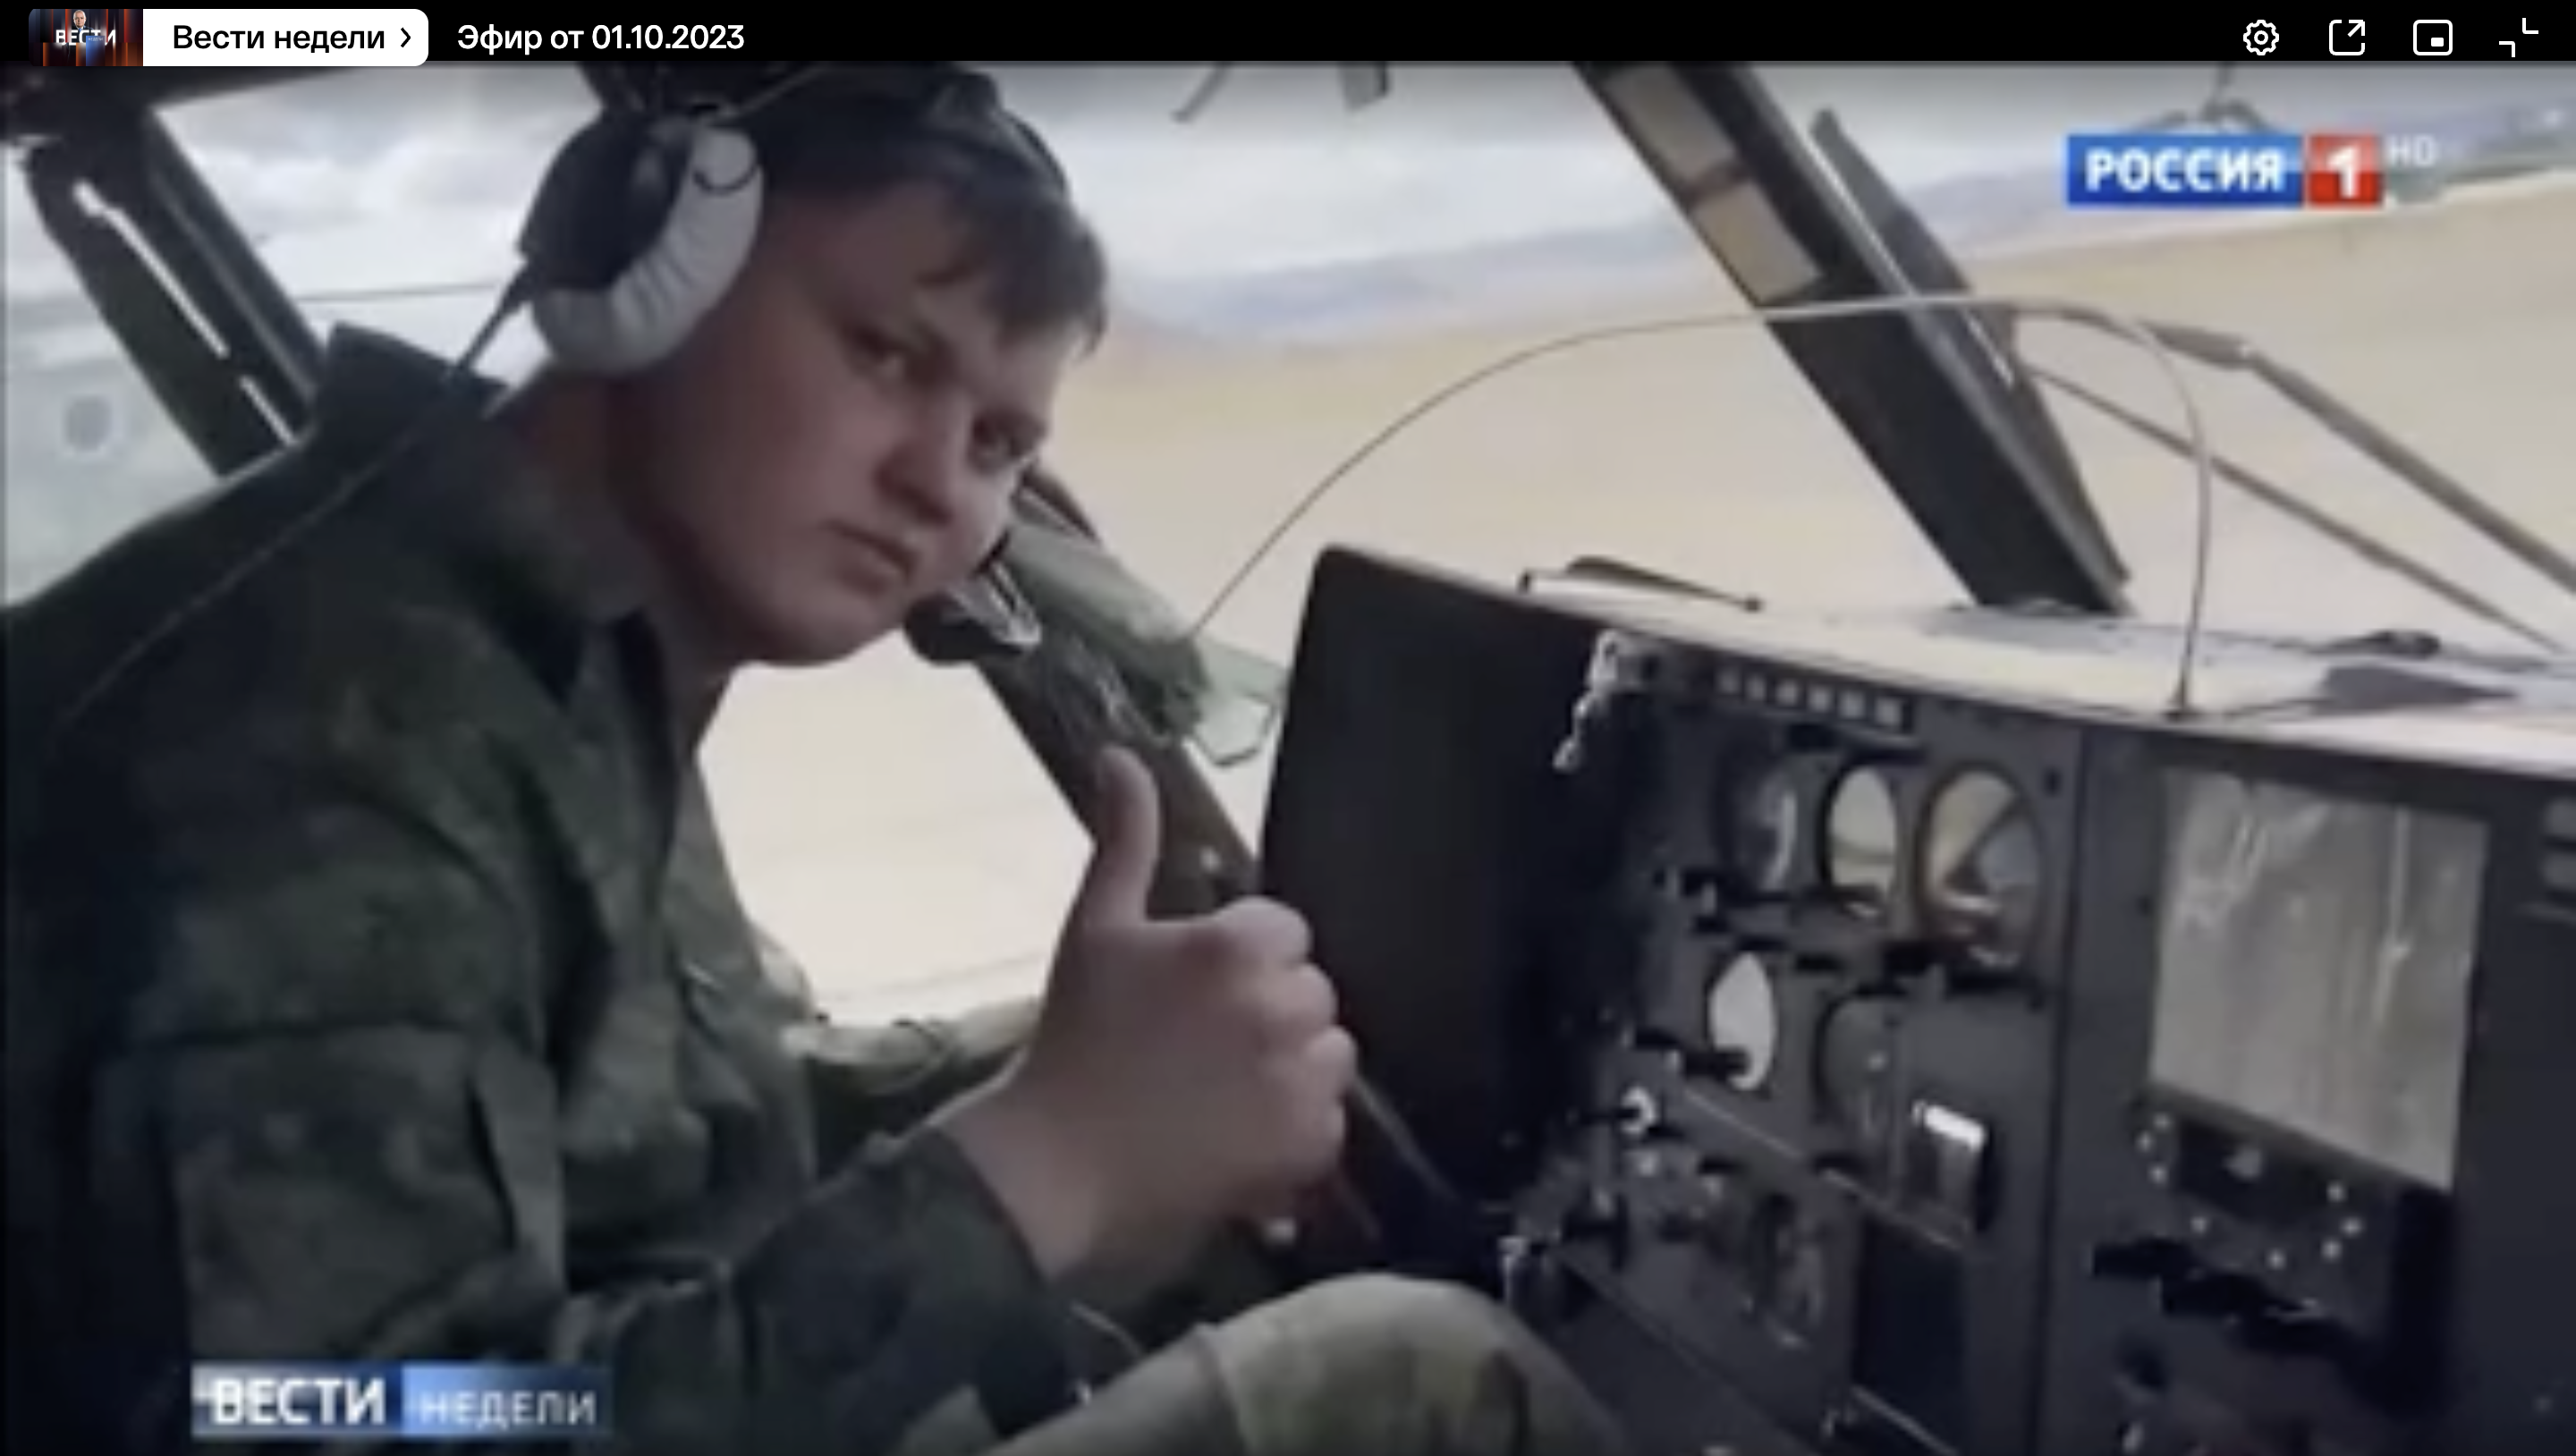 Кто угнал вертолет на украину из россии. Лётчик Кузьминов угнал вертолёт ми-8. Летчик угнал вертолет на Украину. Угнавший вертолет на Украину пилот. Угон вертолёта ми 8 на Украину.